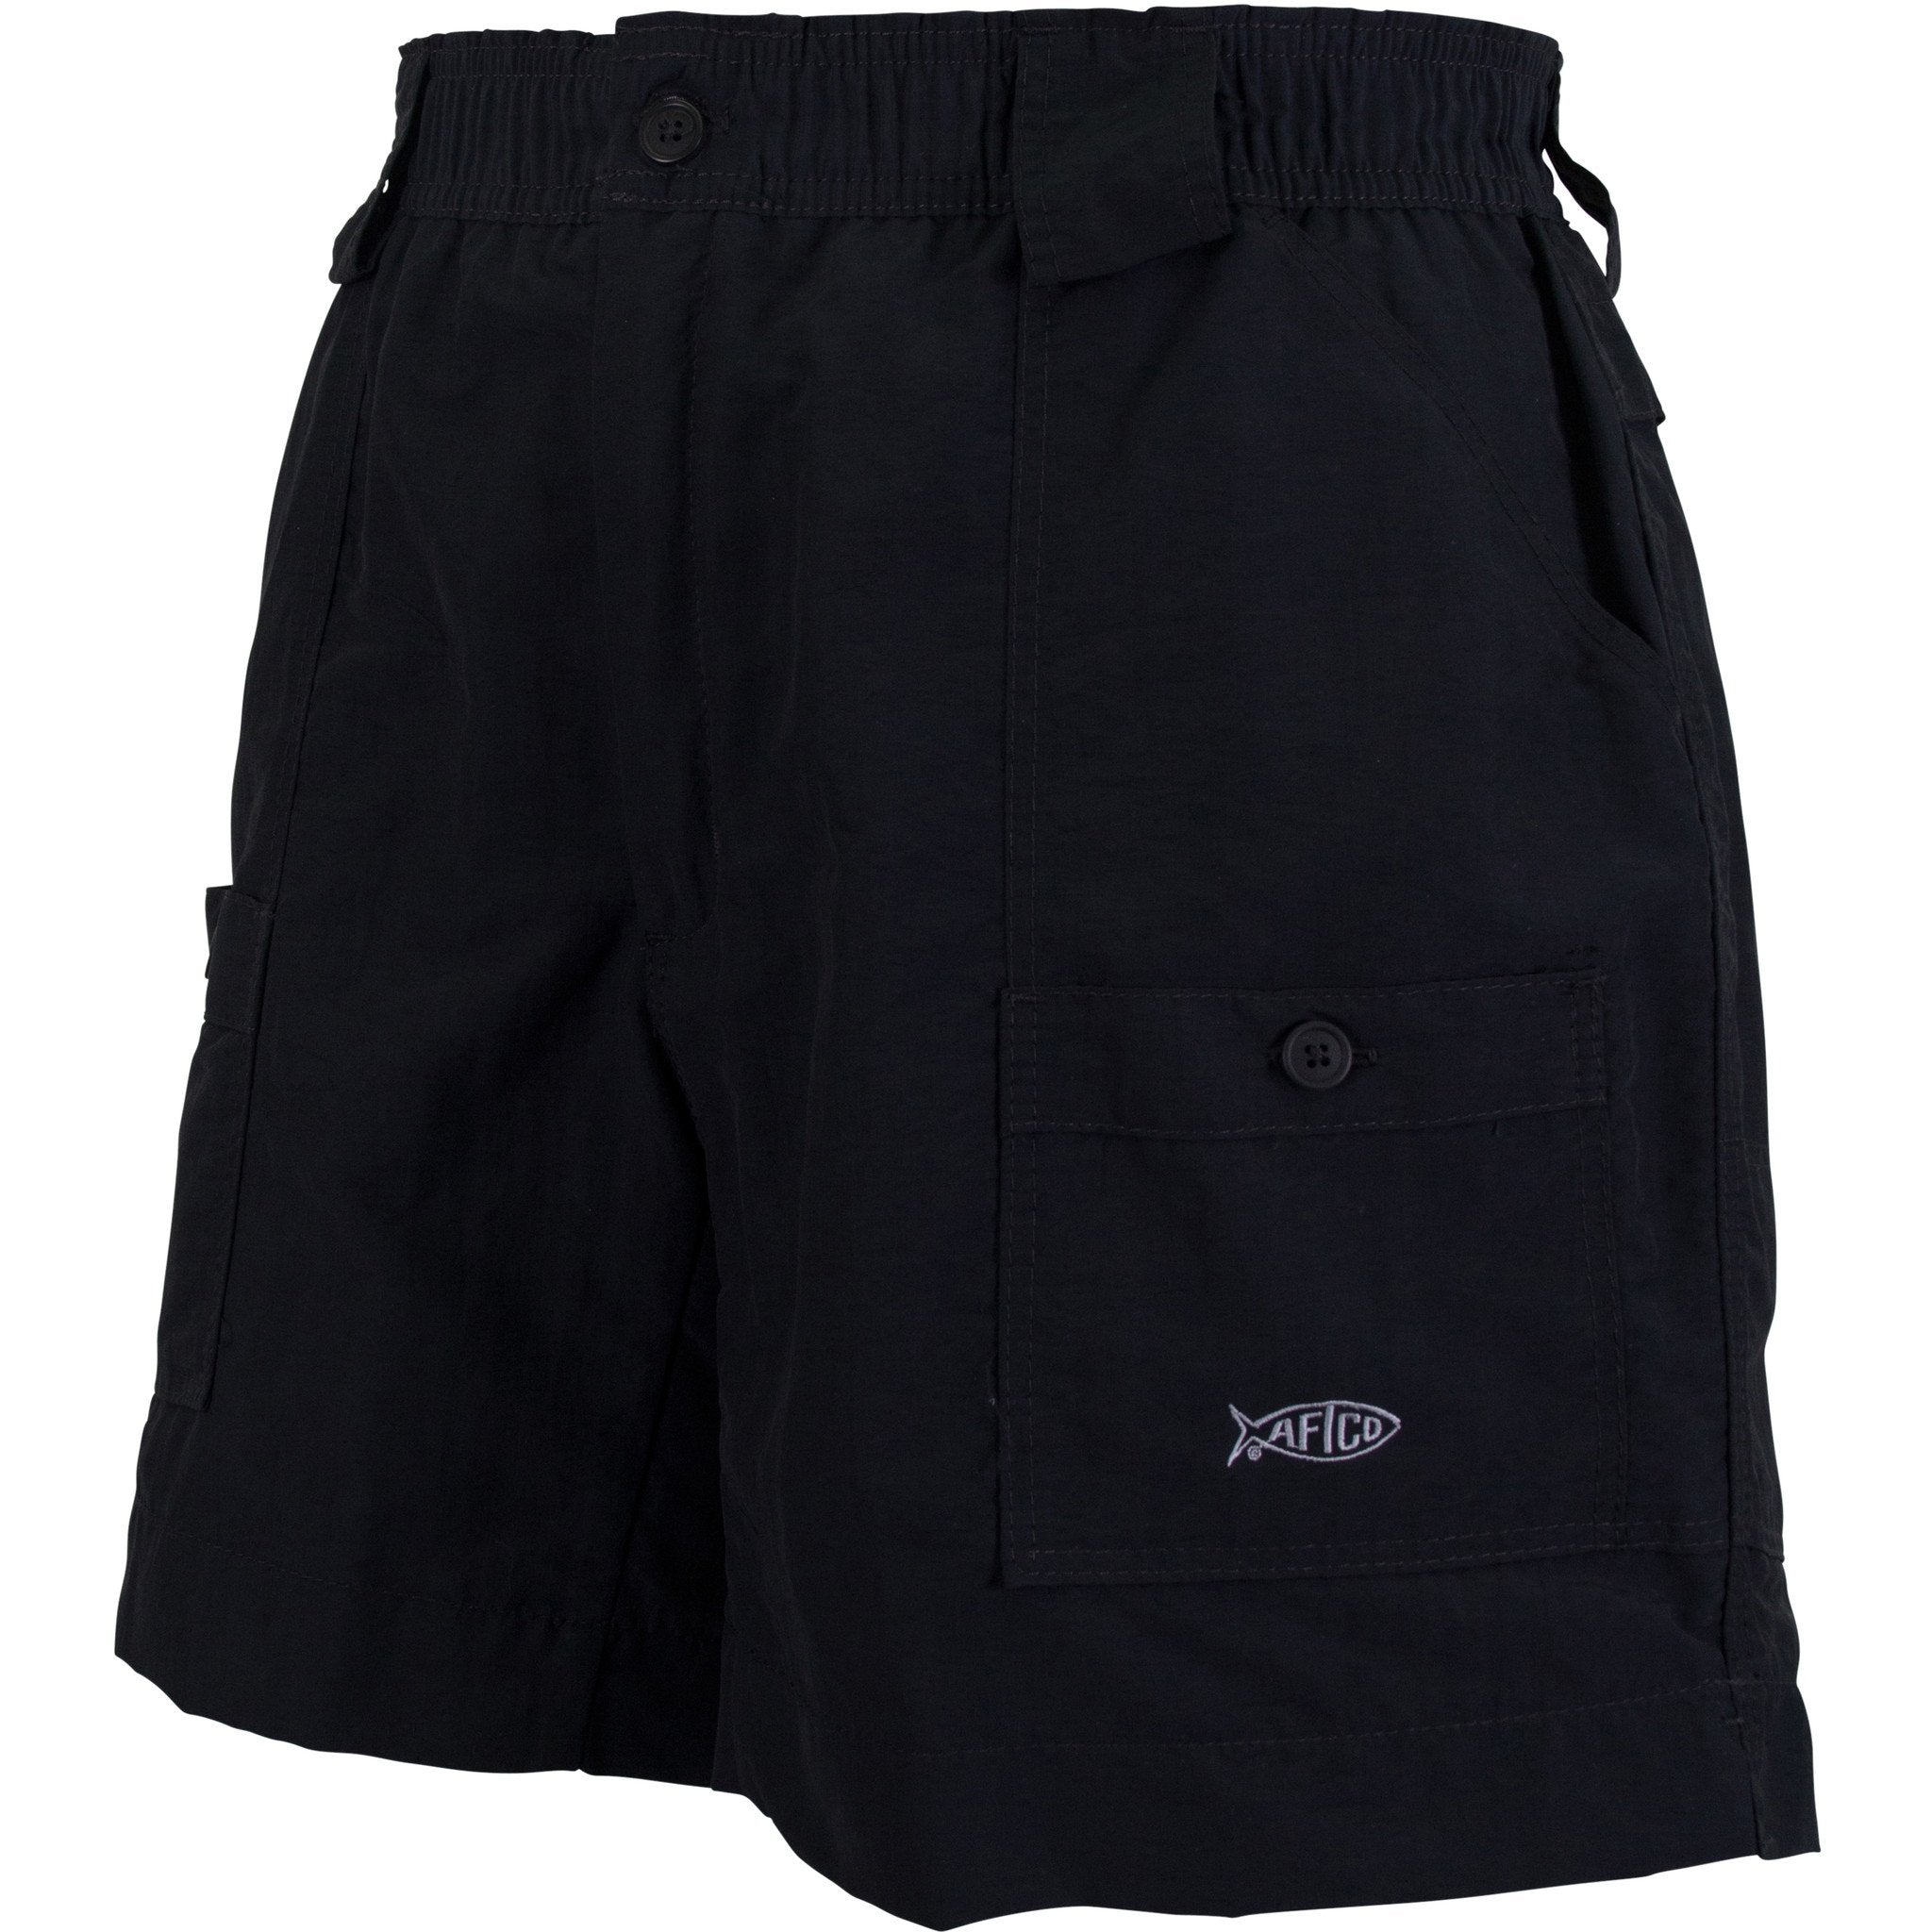 AFTCO M01 Original Men's Fishing Shorts — Discount Tackle